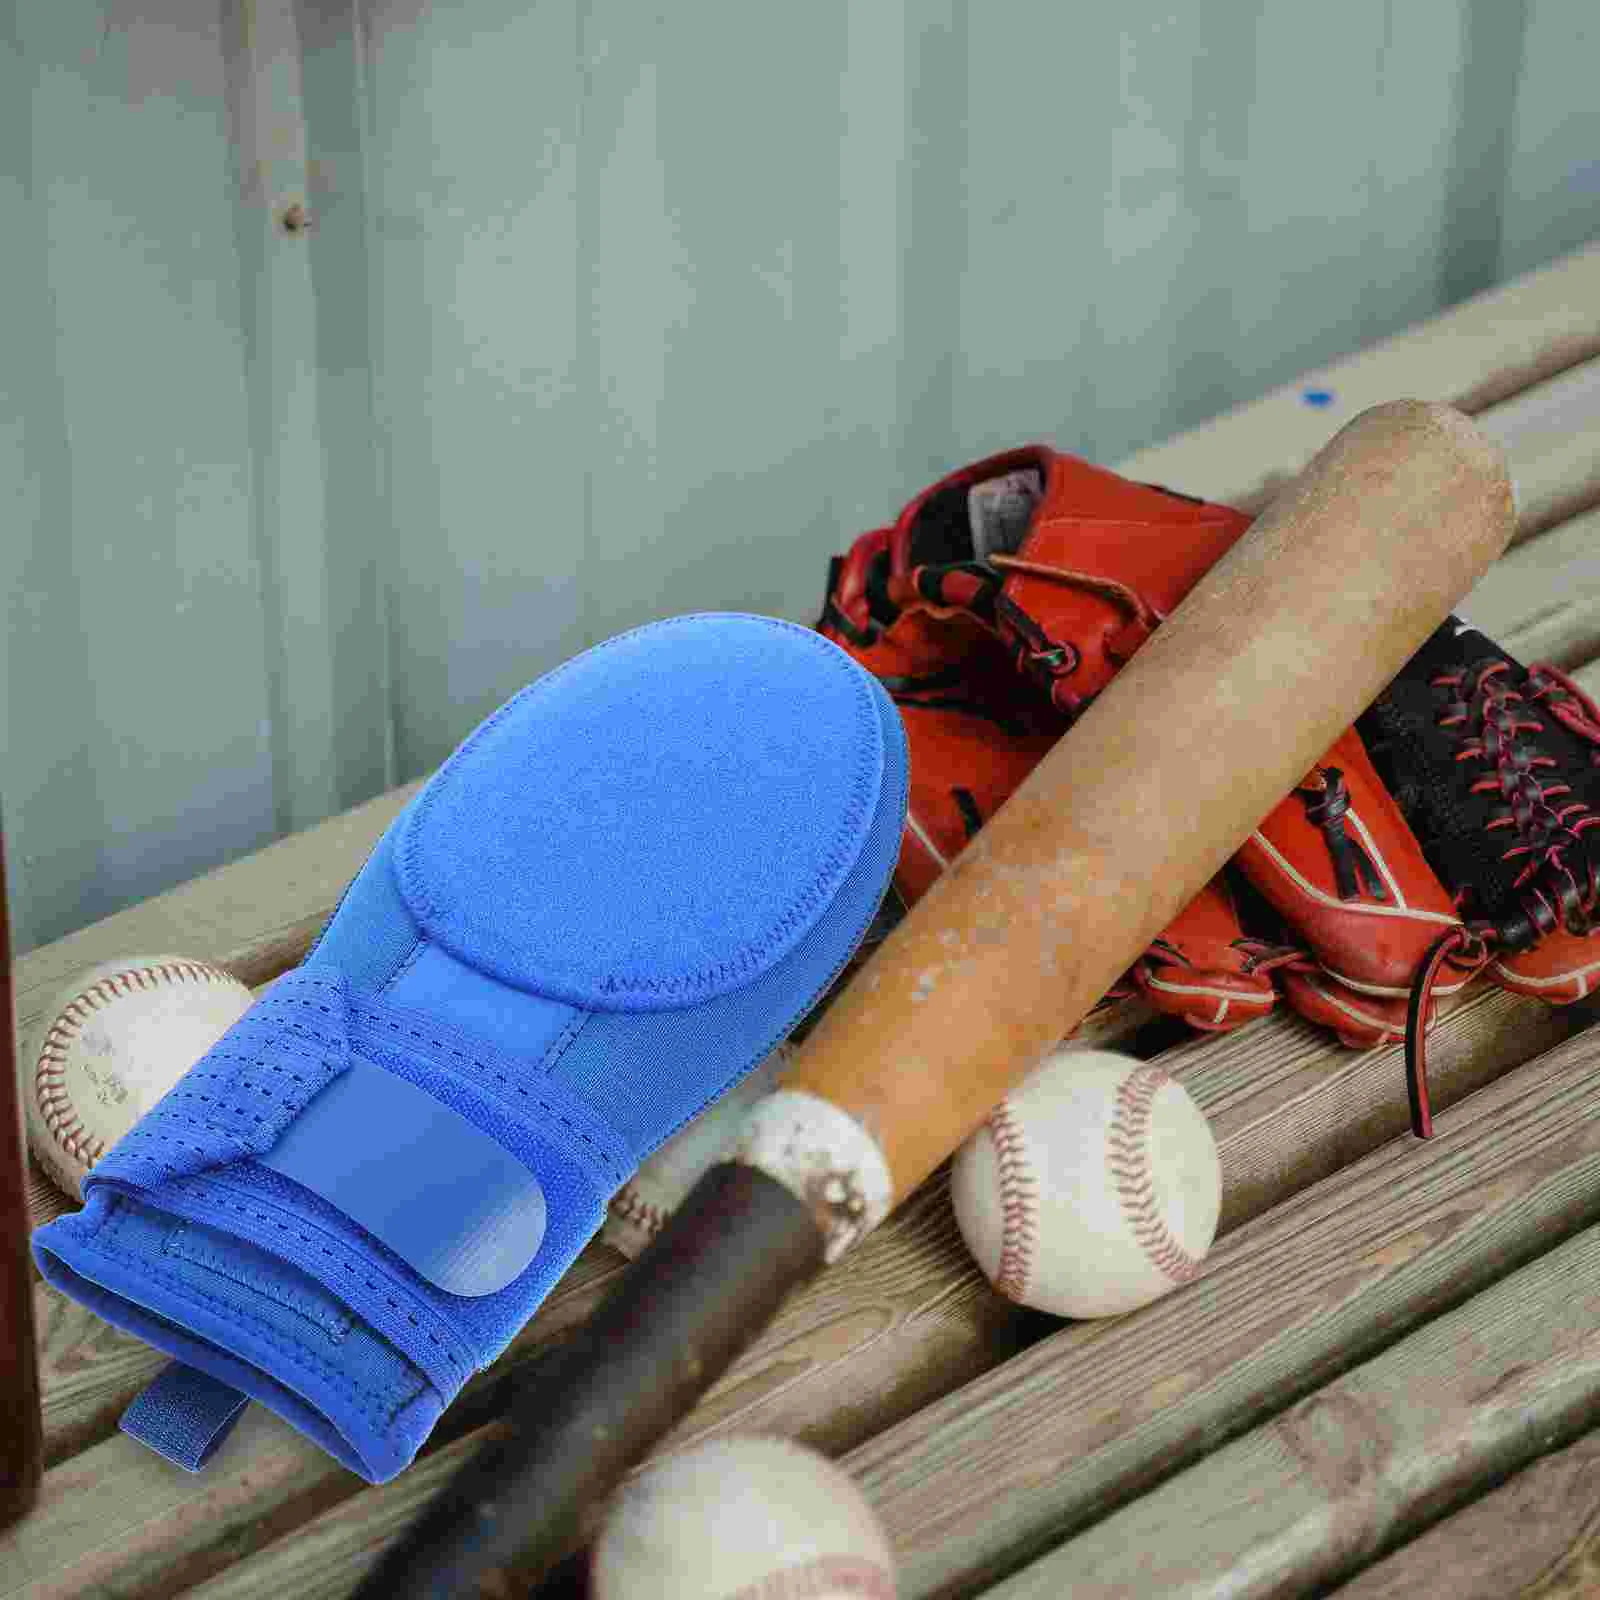 

Baseball Glove Sliding Gloves Mitt Slide Mitten for Sports Mitts Training Running